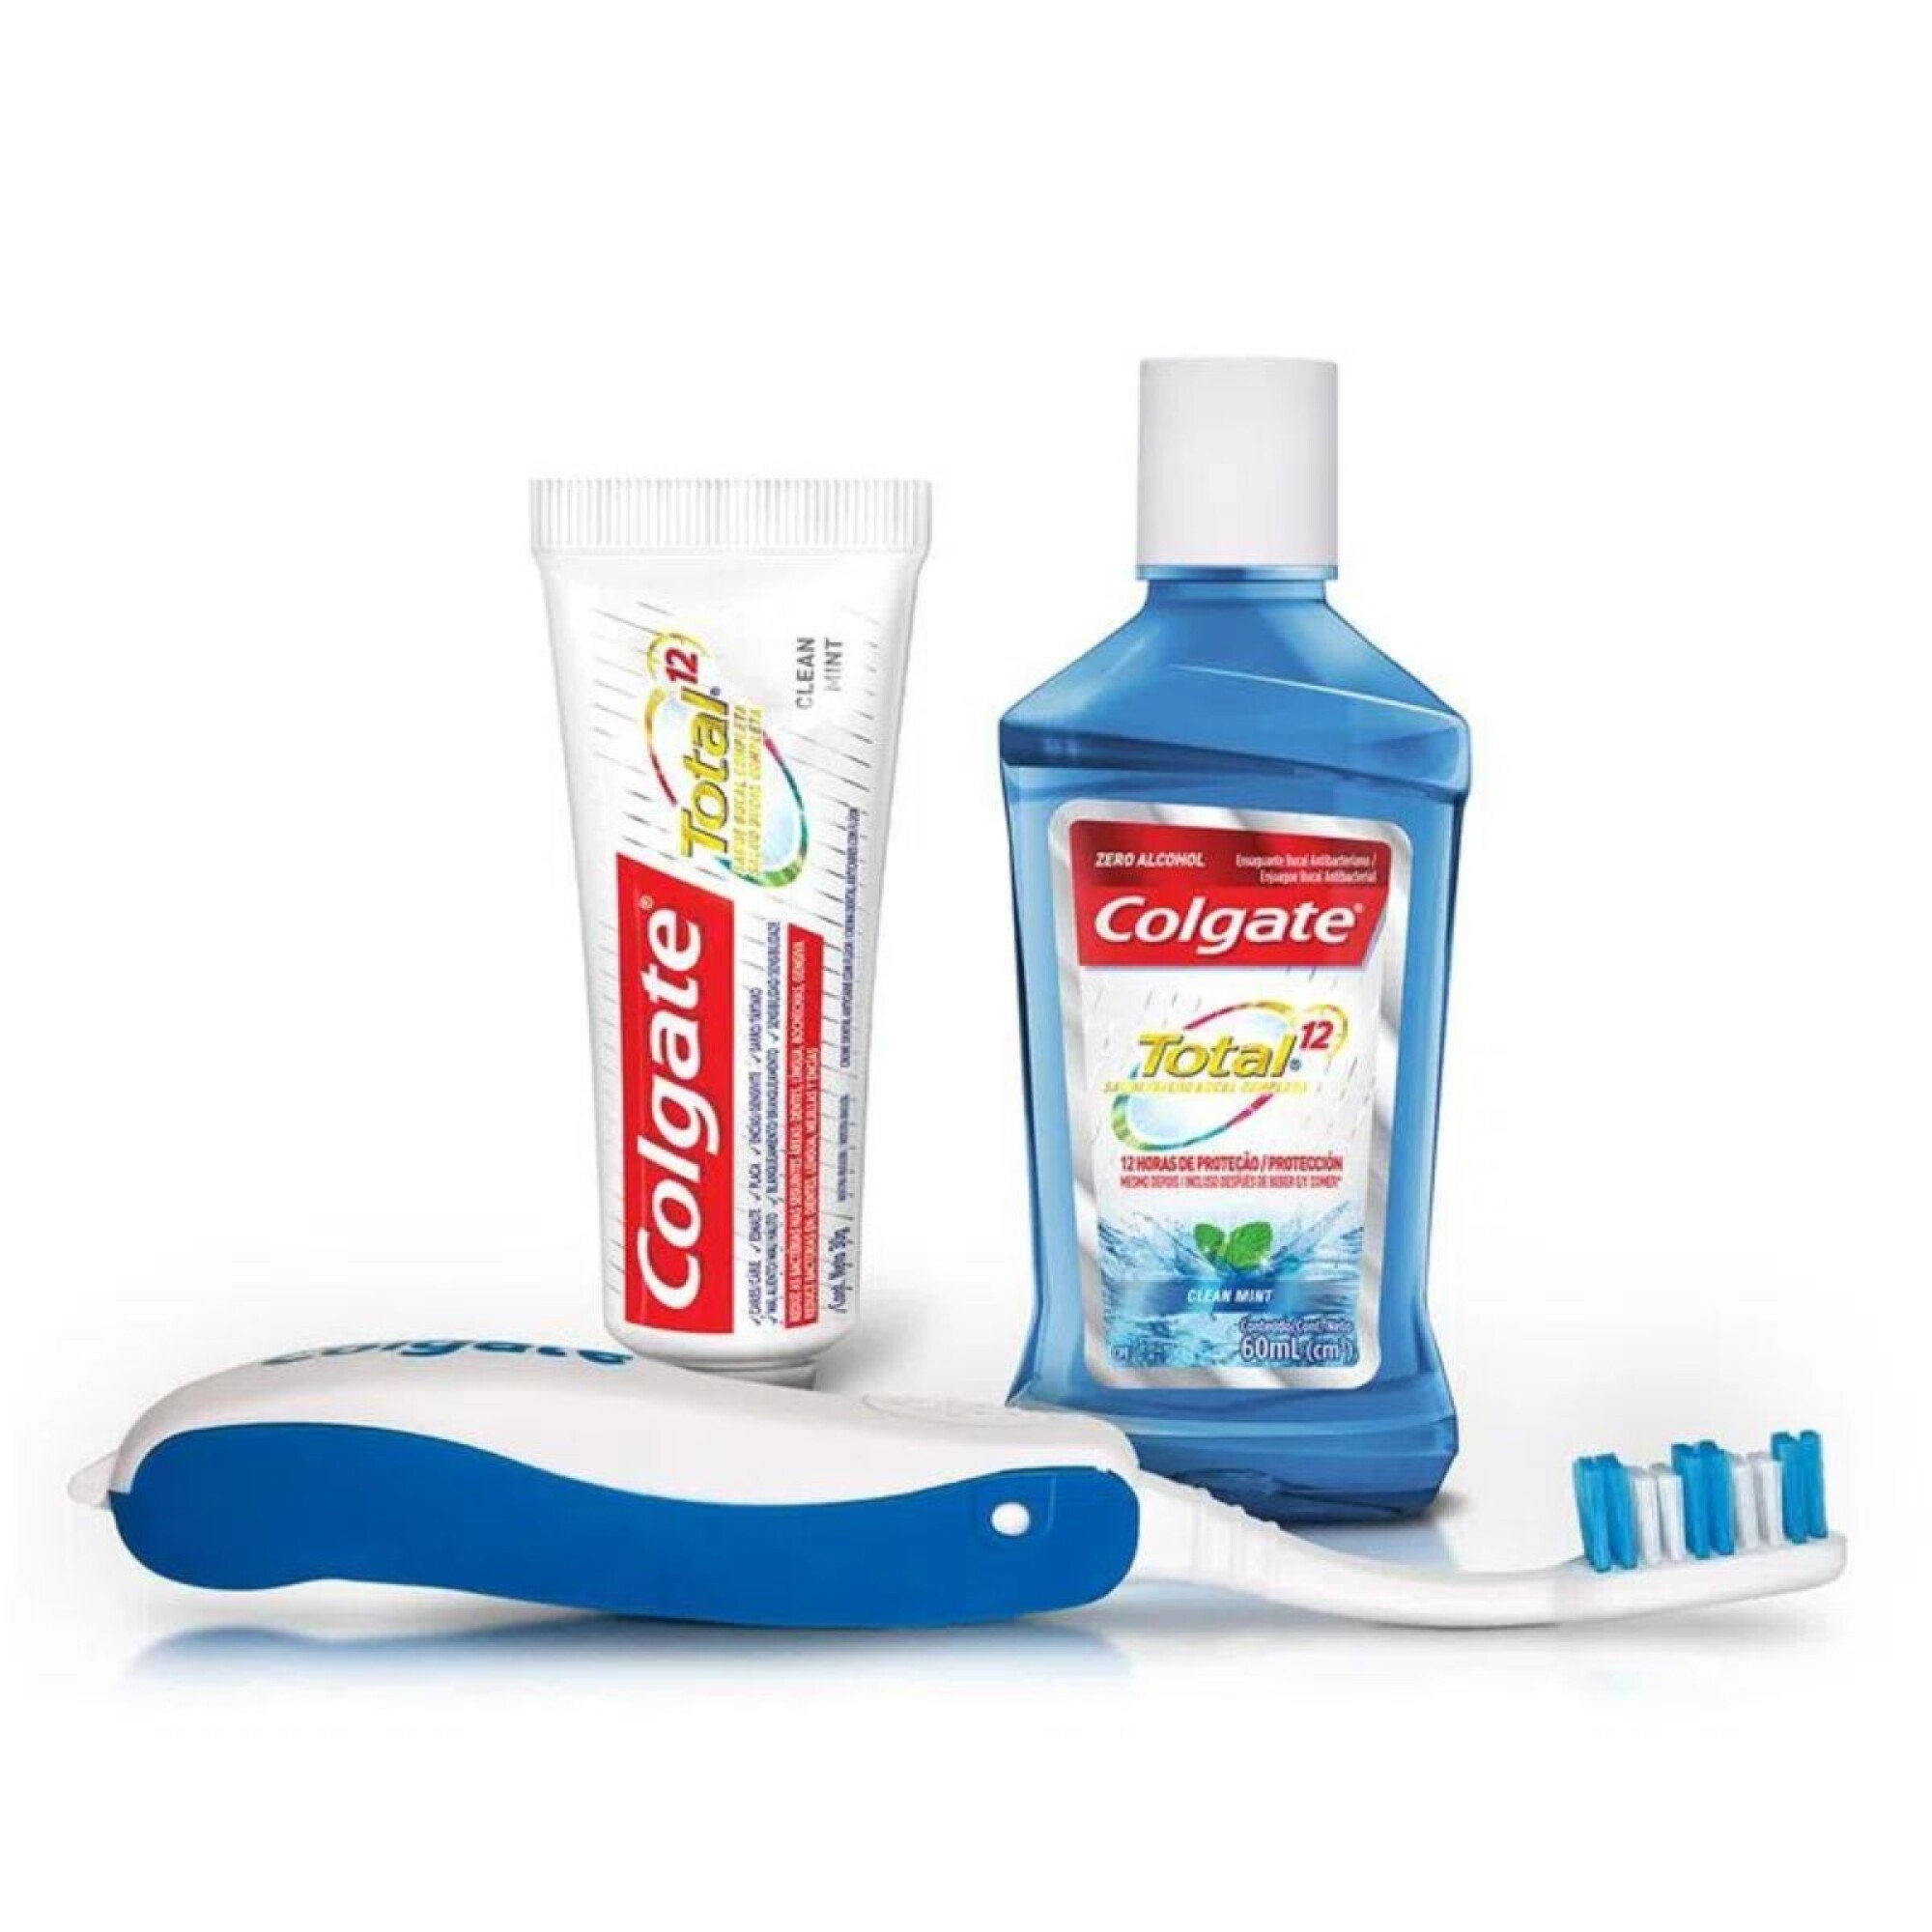 Colgate Kit de Viaje Cepillo, Enjuague y Pasta dental — Farmacia Parque  Miramar